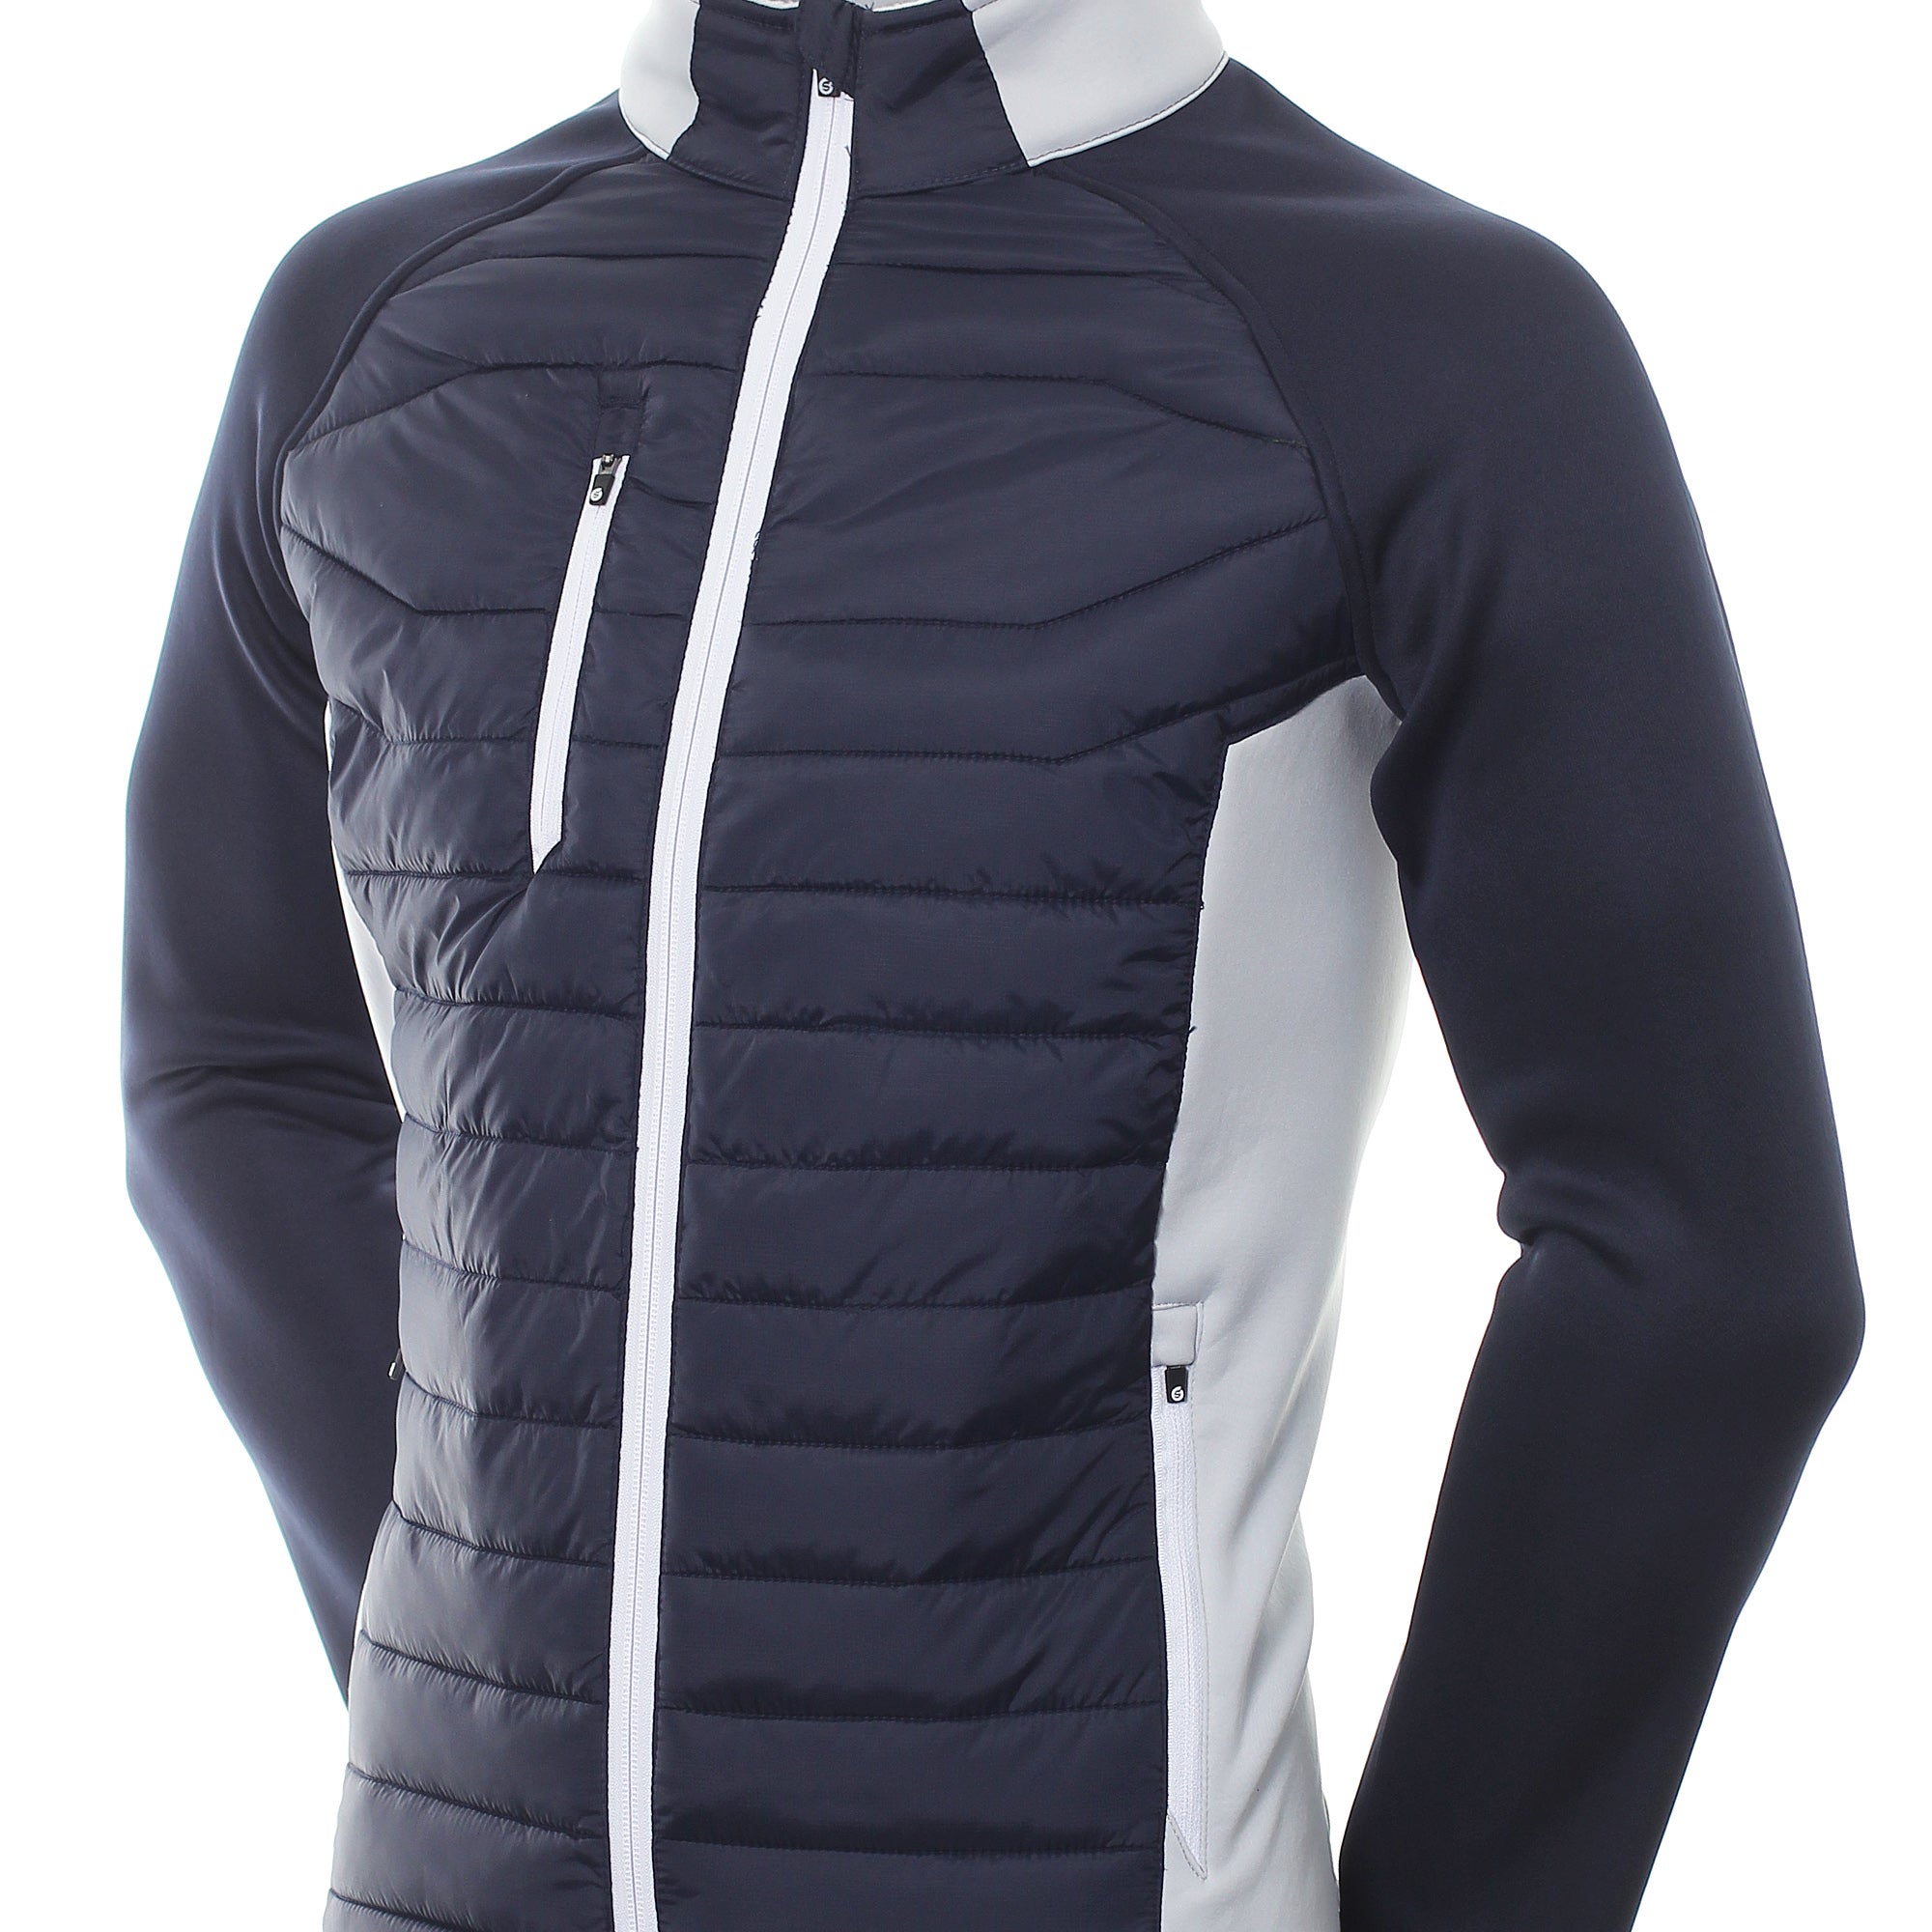 sunderland-golf-zermatt-padded-jacket-navy-silver-white